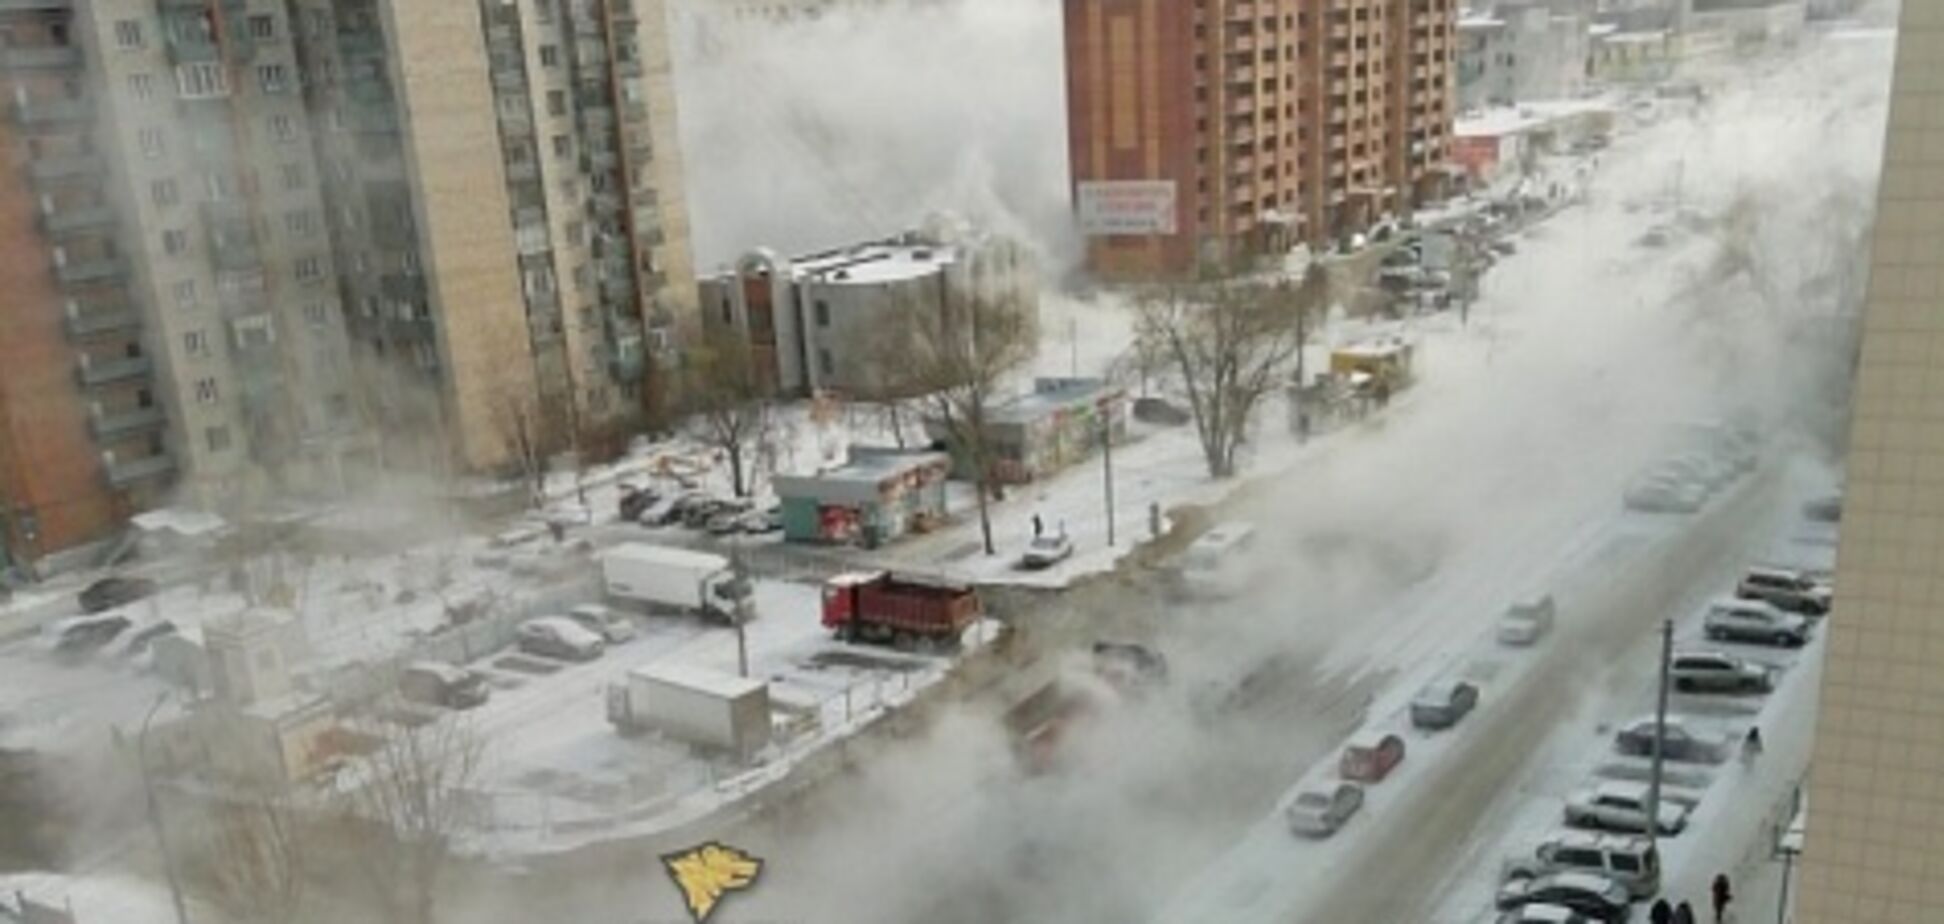 Видимость нулевая: город в России затопило кипятком. Фото и видео с места ЧП